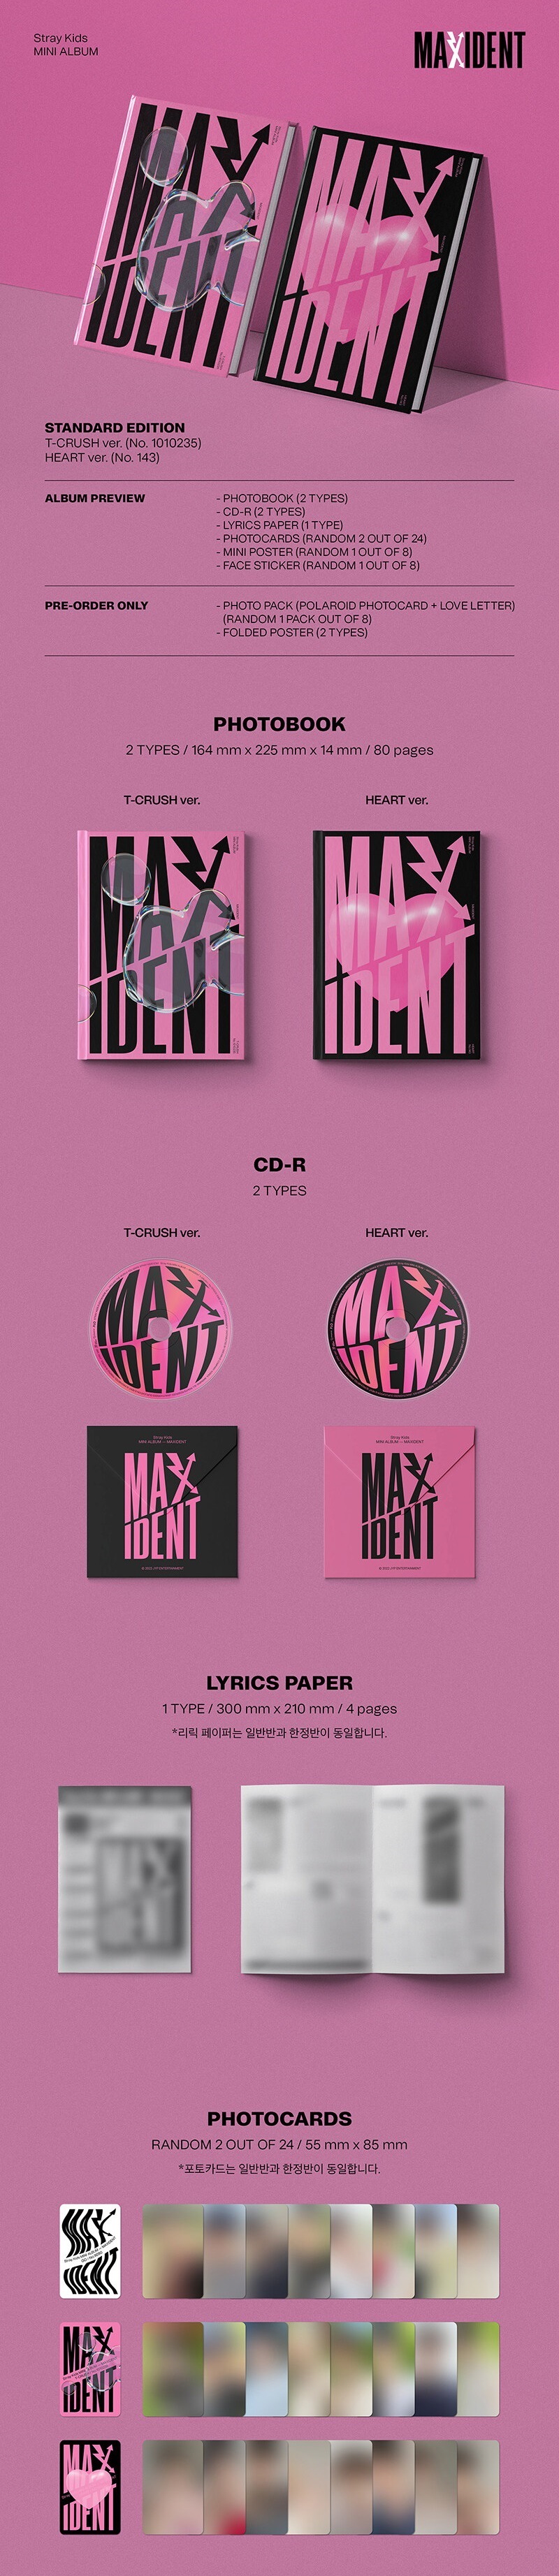 全特典まとめ】Stray Kids(スキズ) アルバム「MAXIDENT」予約最安値 